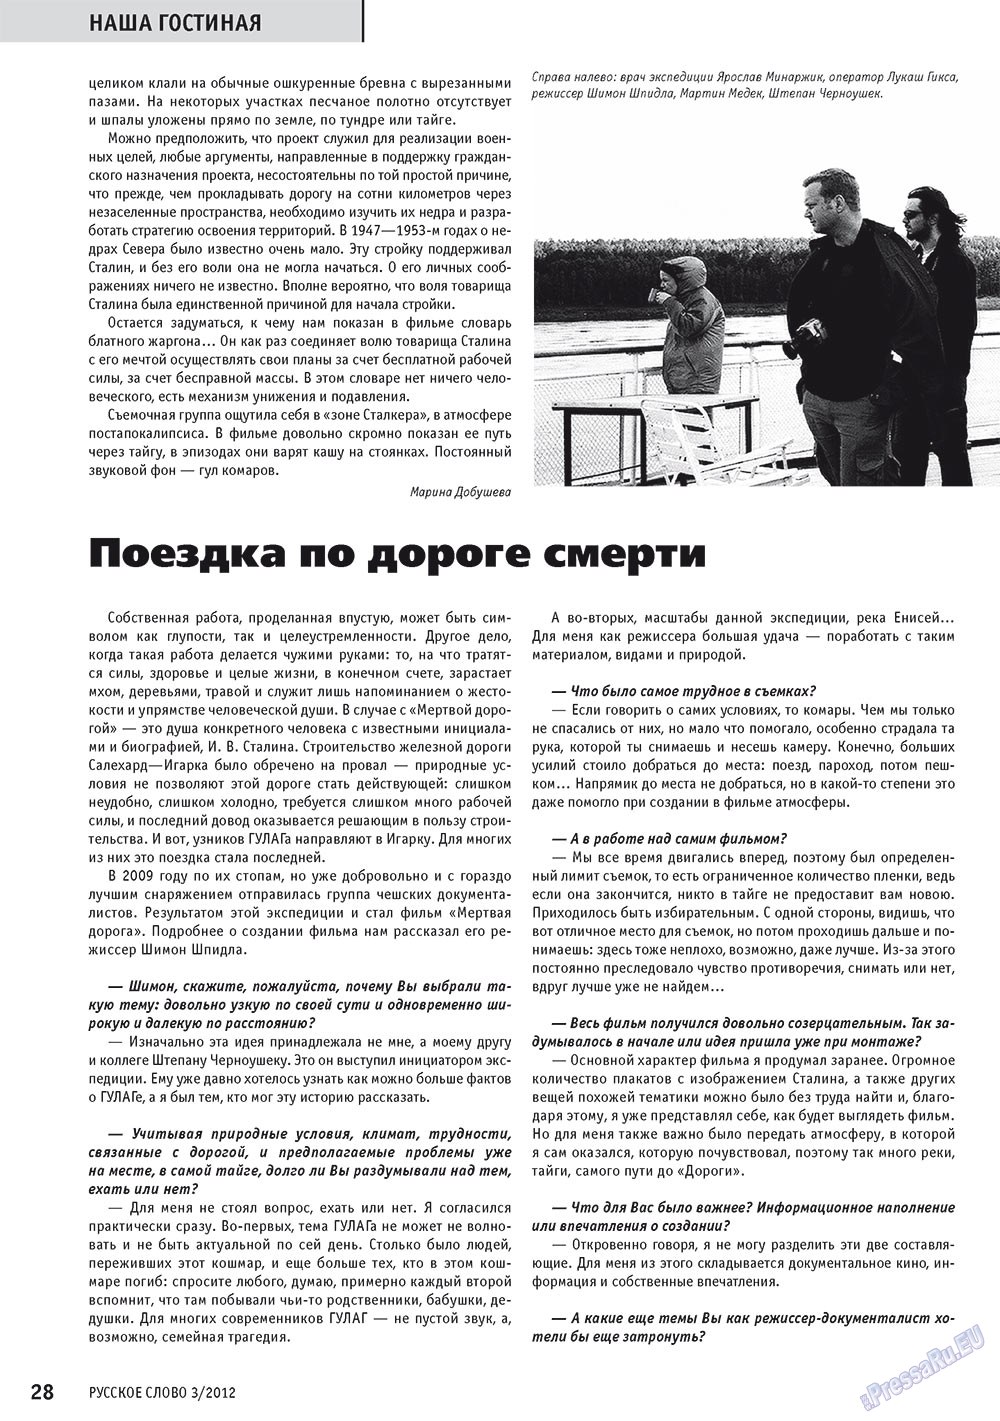 Русское слово, журнал. 2012 №3 стр.29